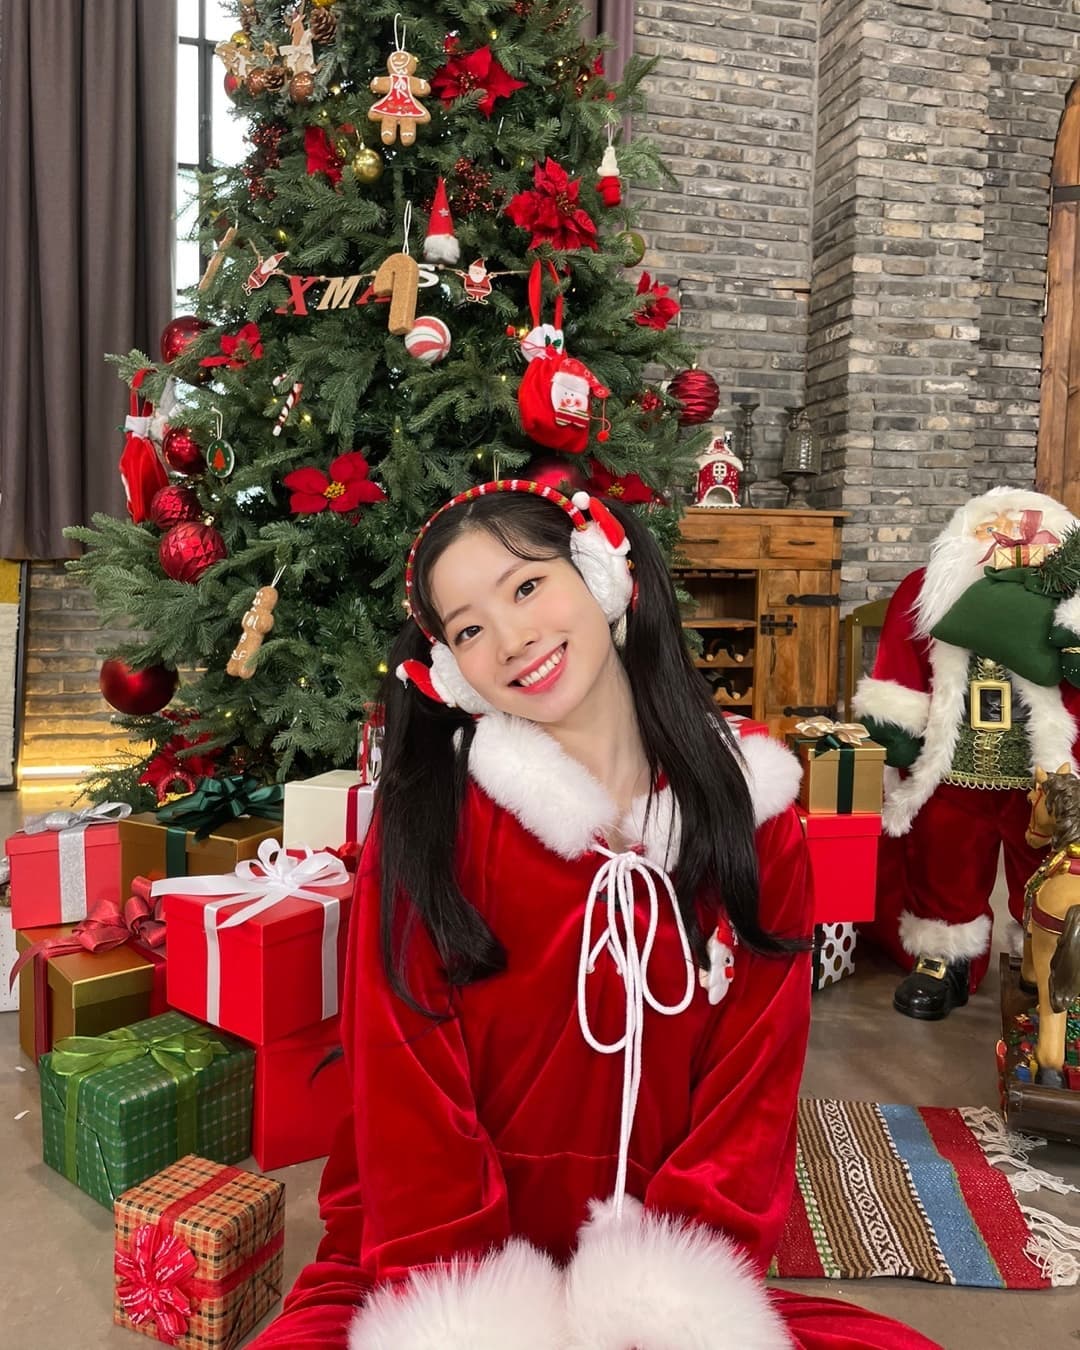 TWICEダヒョン、「妖精サンタ」に変身…「4日を残すクリスマス 